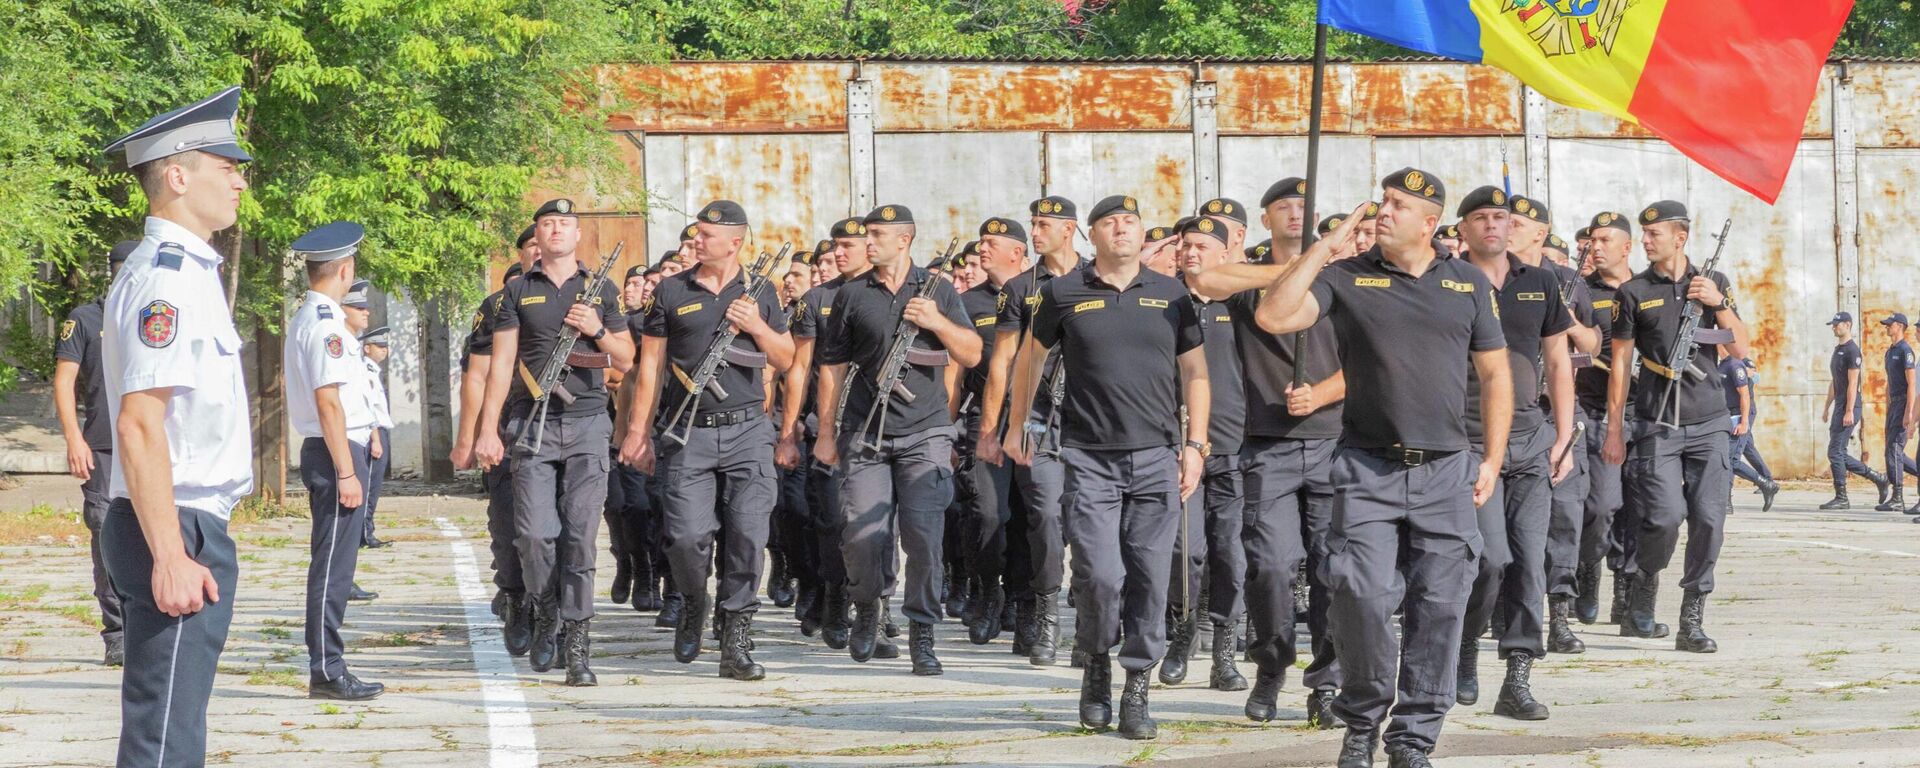 
Сотрудники МВД готовятся к военному параду - Sputnik Молдова, 1920, 03.08.2021